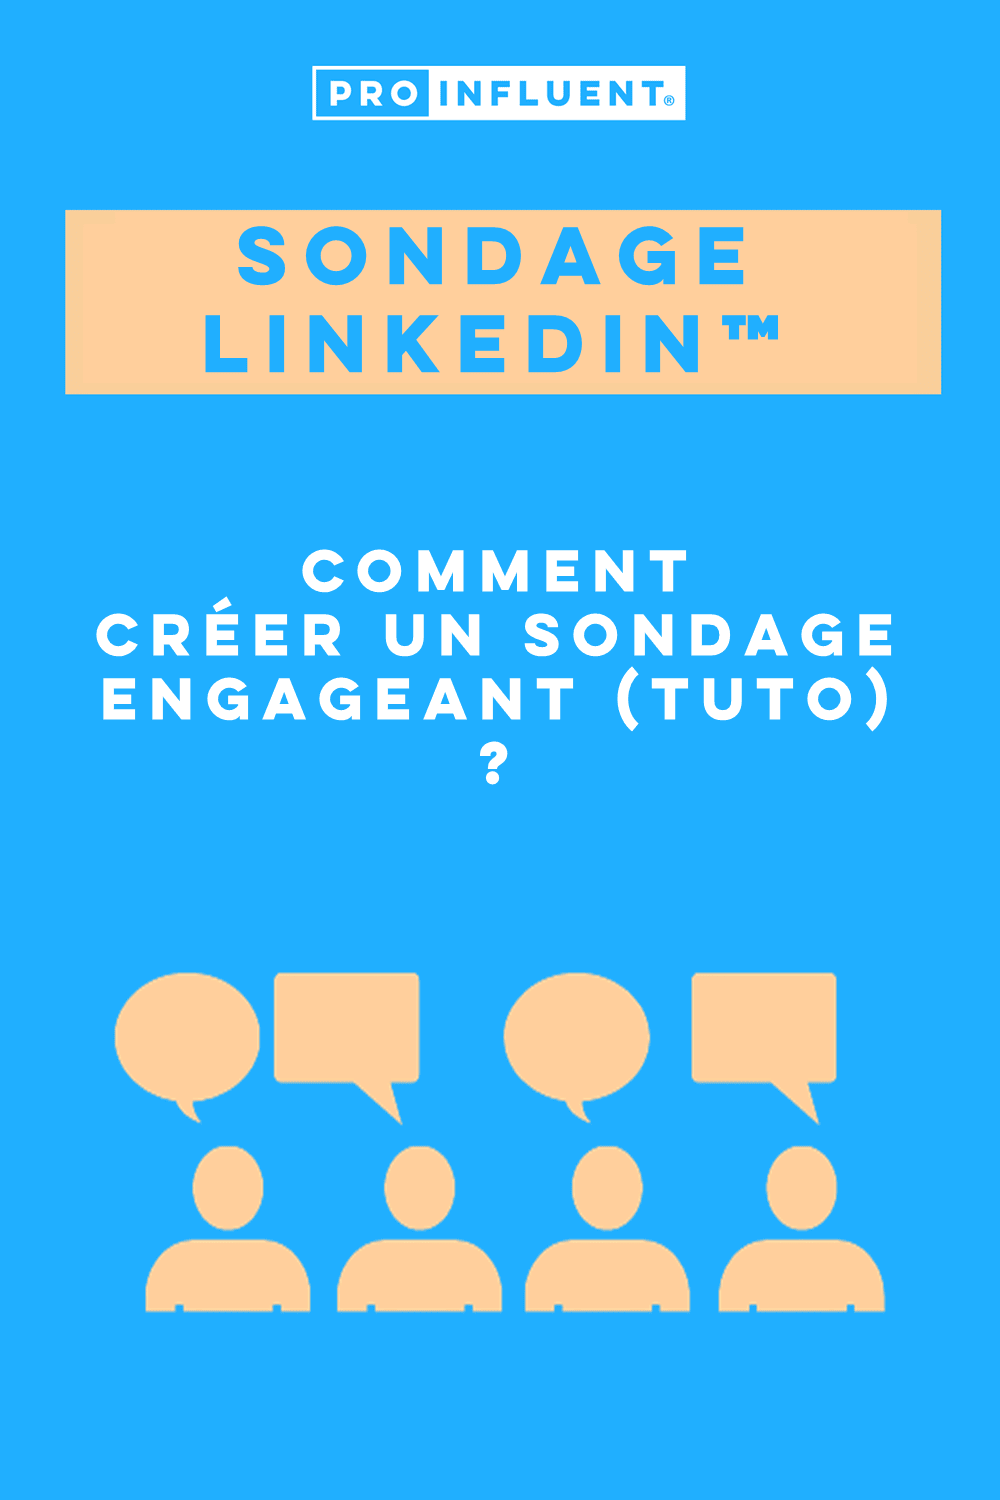 Sondage LinkedIn™ : comment créer un sondage engageant (tuto) ?